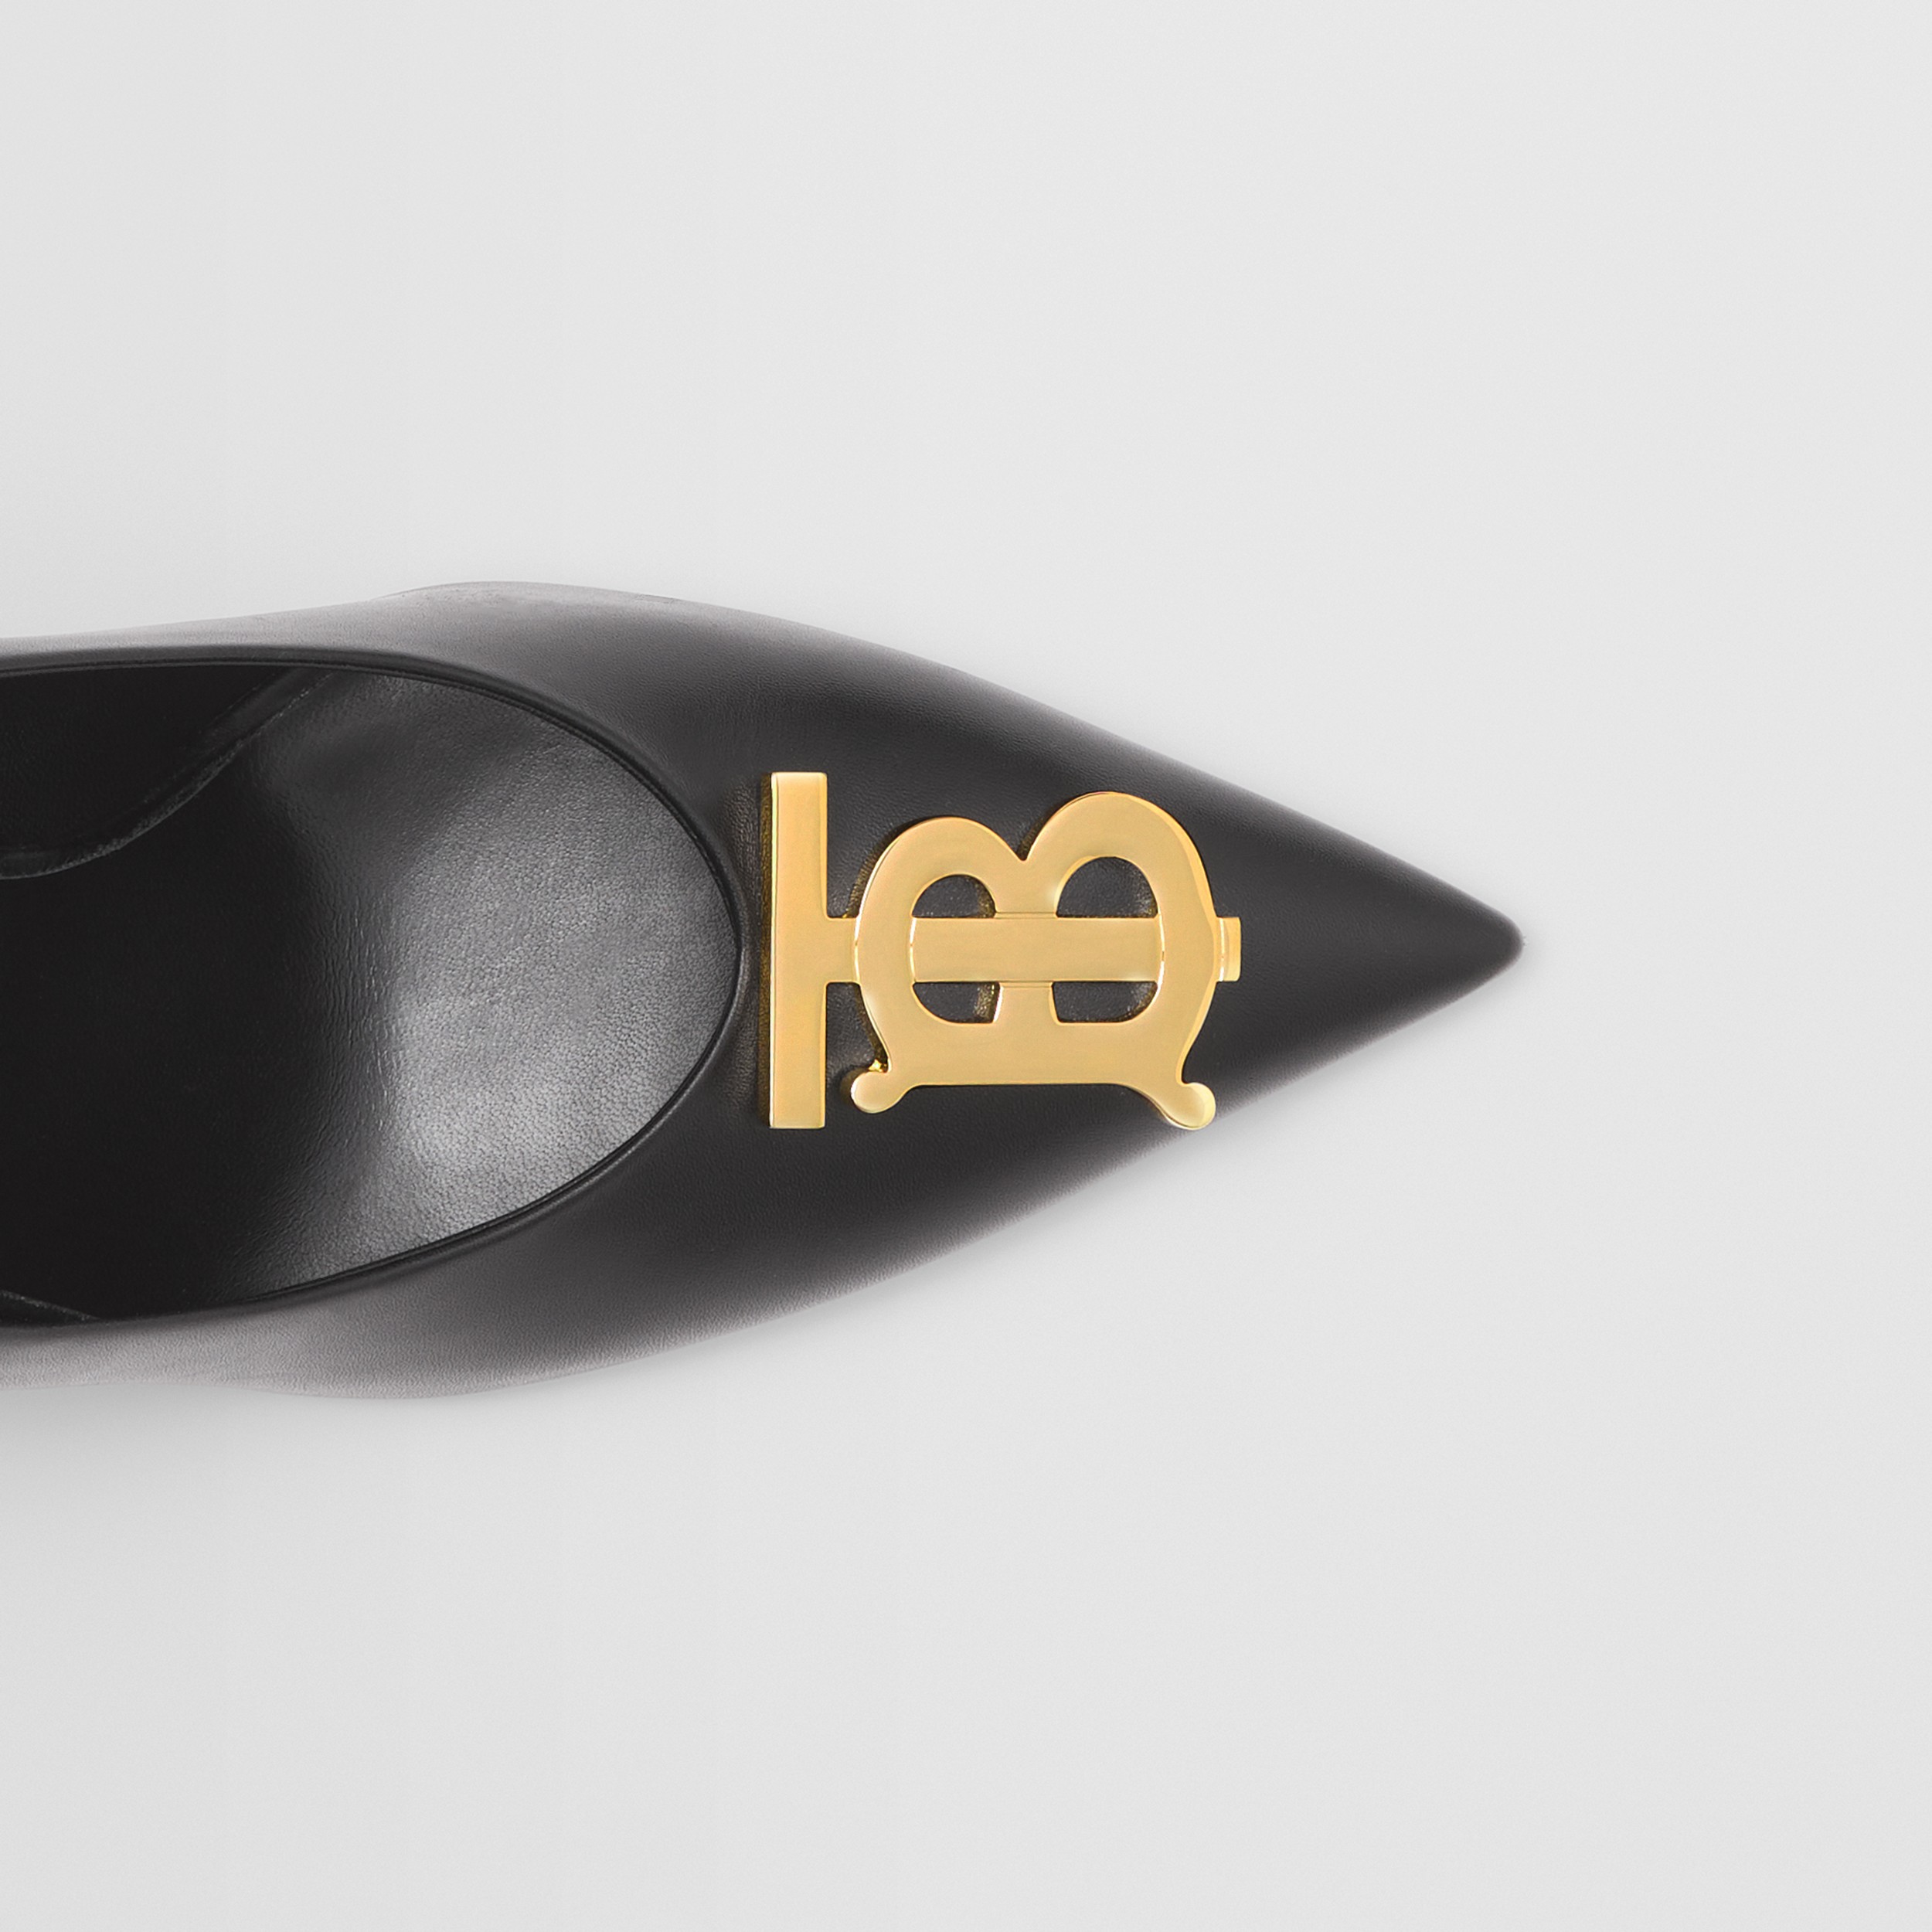 Scarpins de bico fino de couro com monograma (Preto) - Mulheres | Burberry® oficial - 2